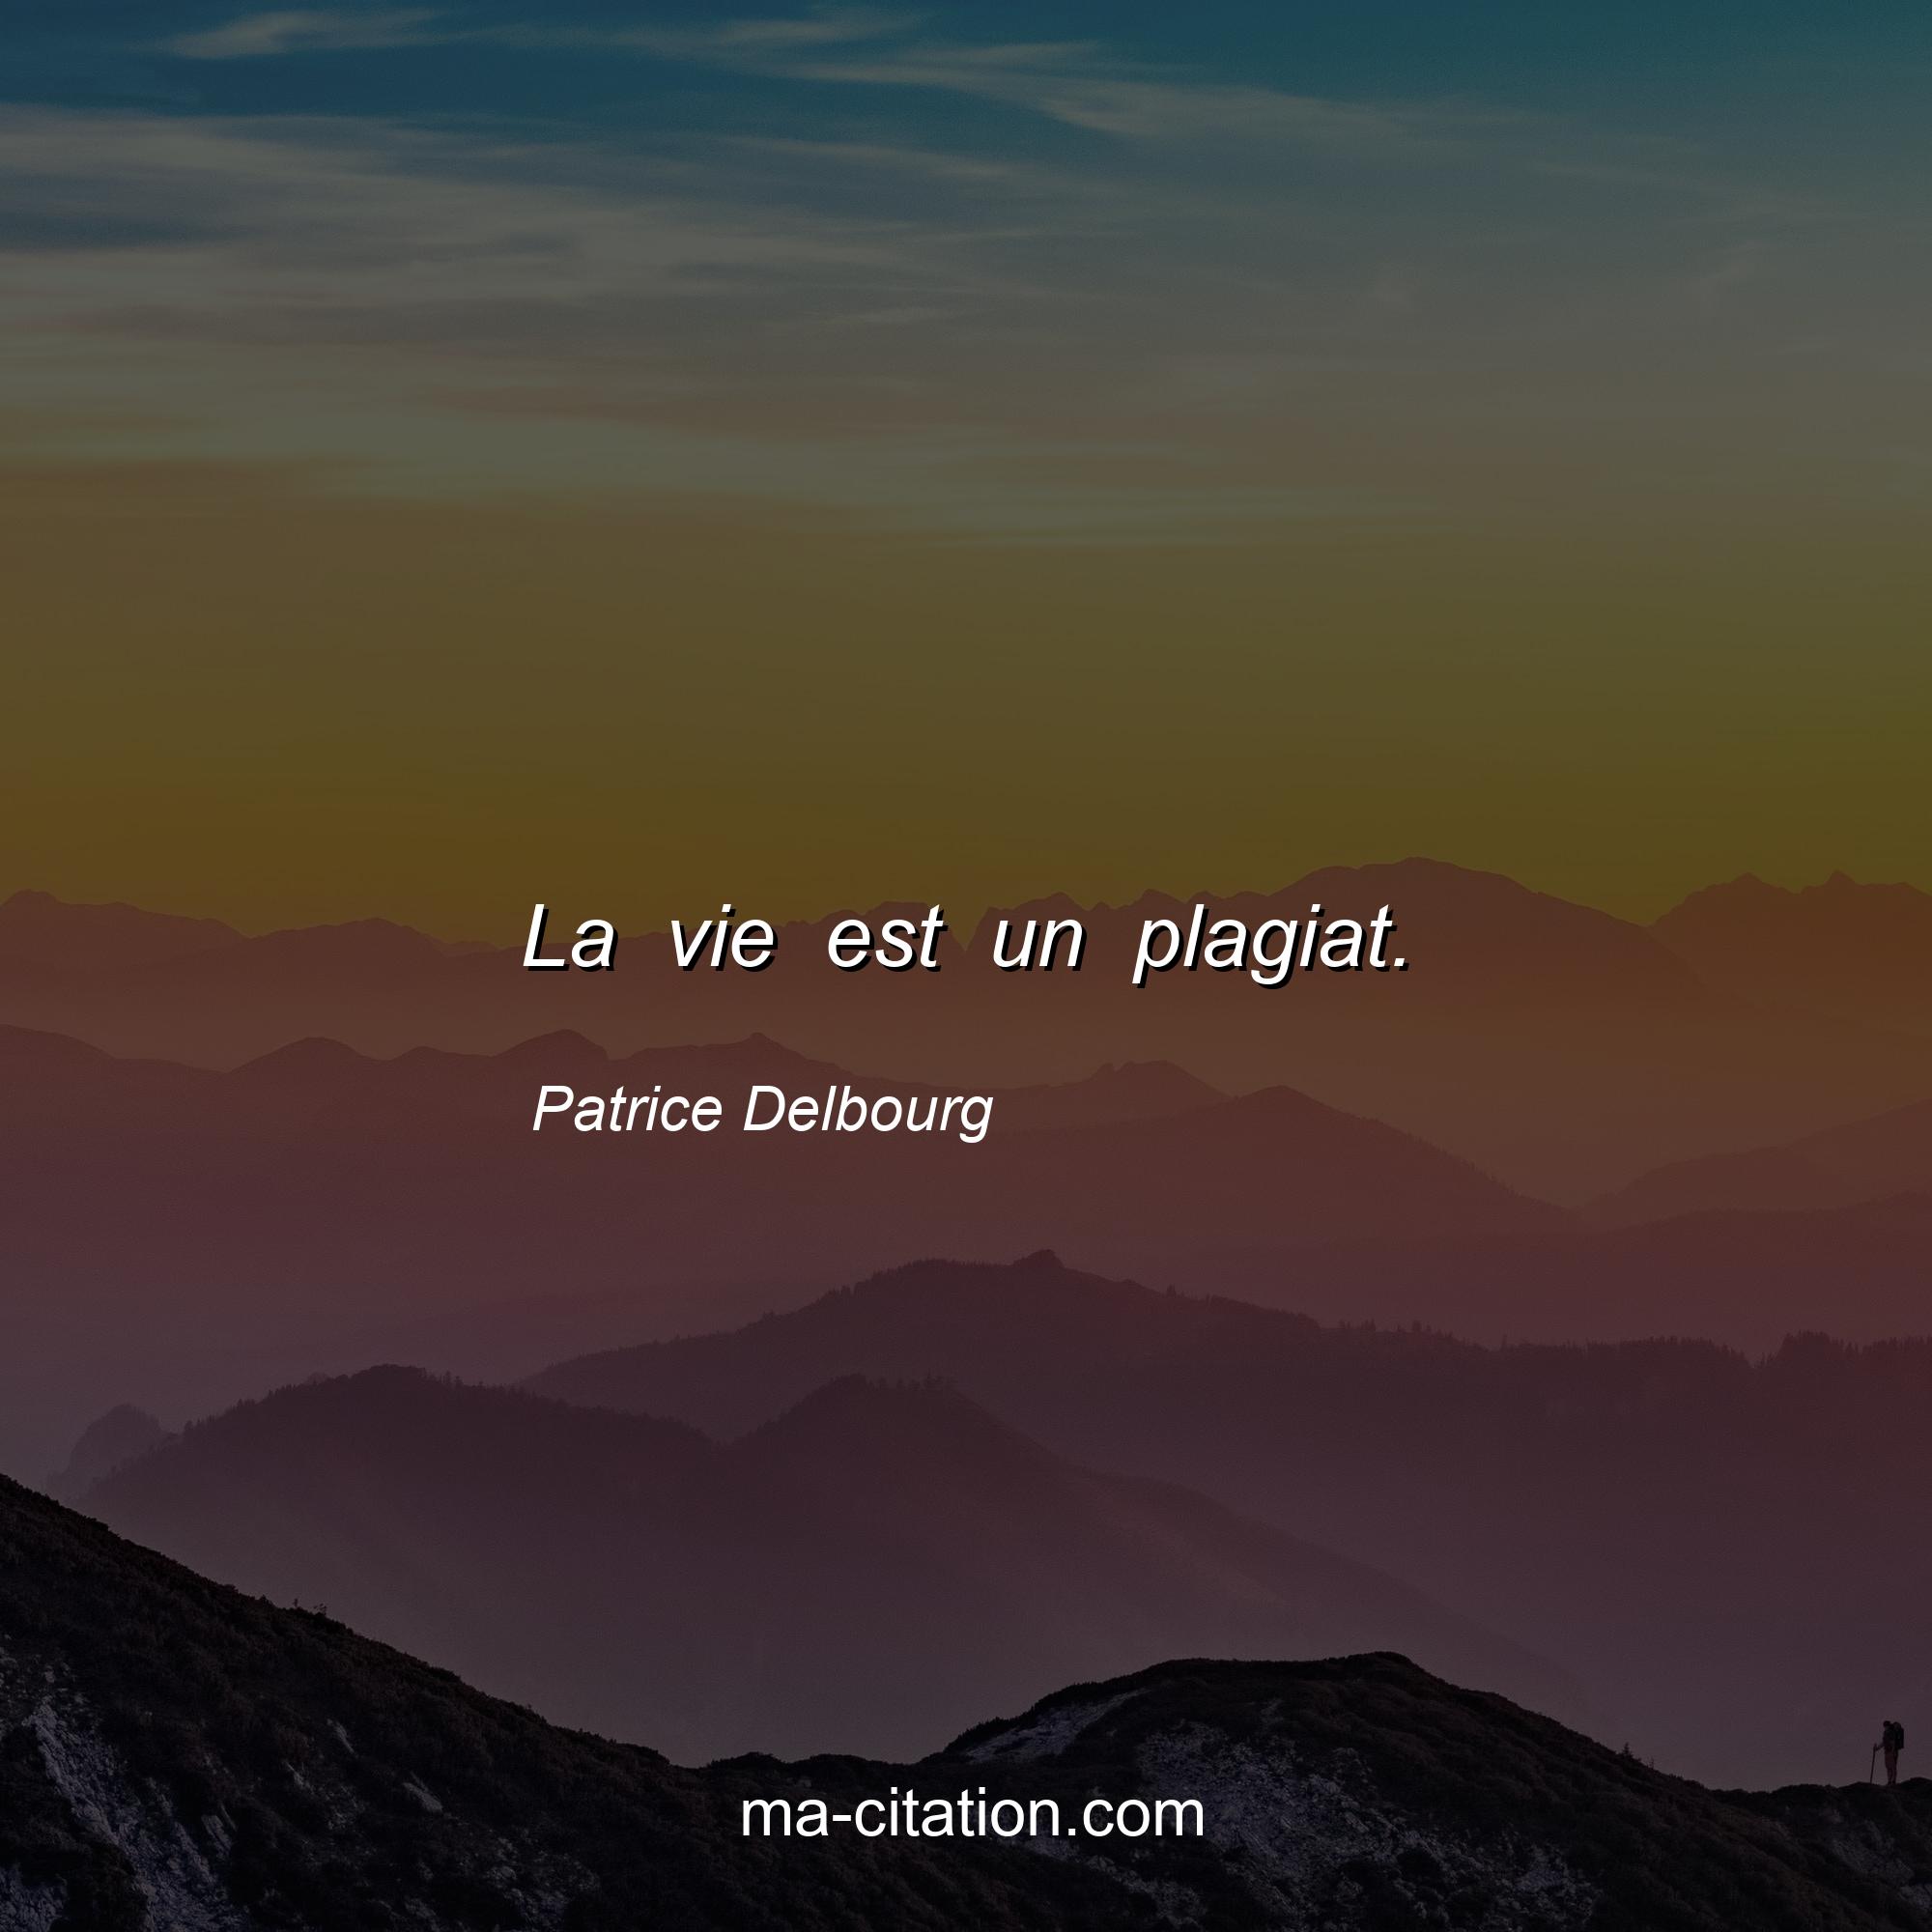 Patrice Delbourg : La vie est un plagiat.